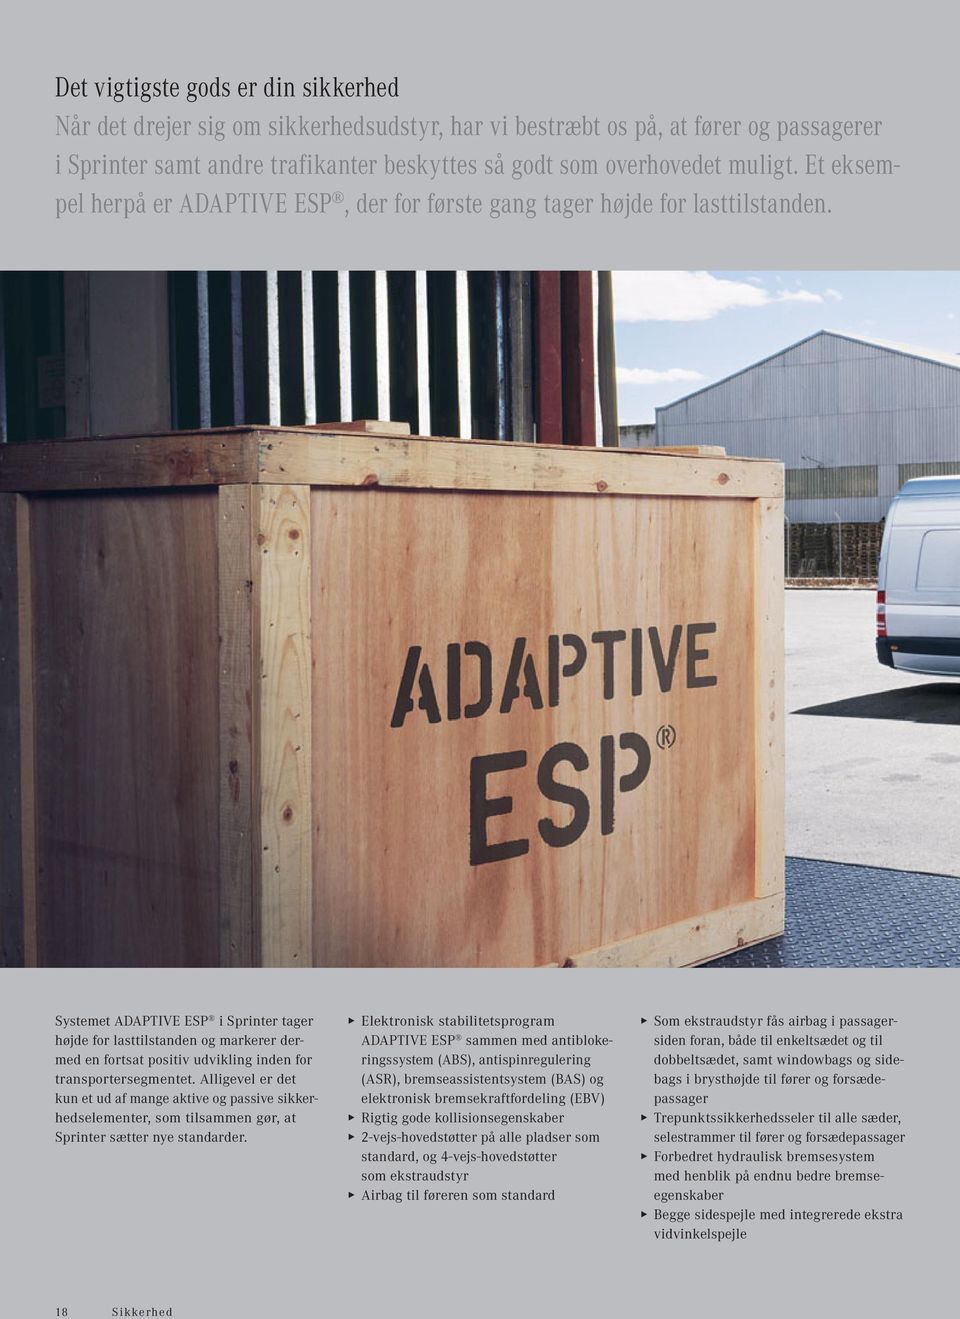 Systemet ADAPTIVE ESP i Sprinter tager højde for lasttilstanden og markerer dermed en fortsat positiv udvikling inden for transportersegmentet.